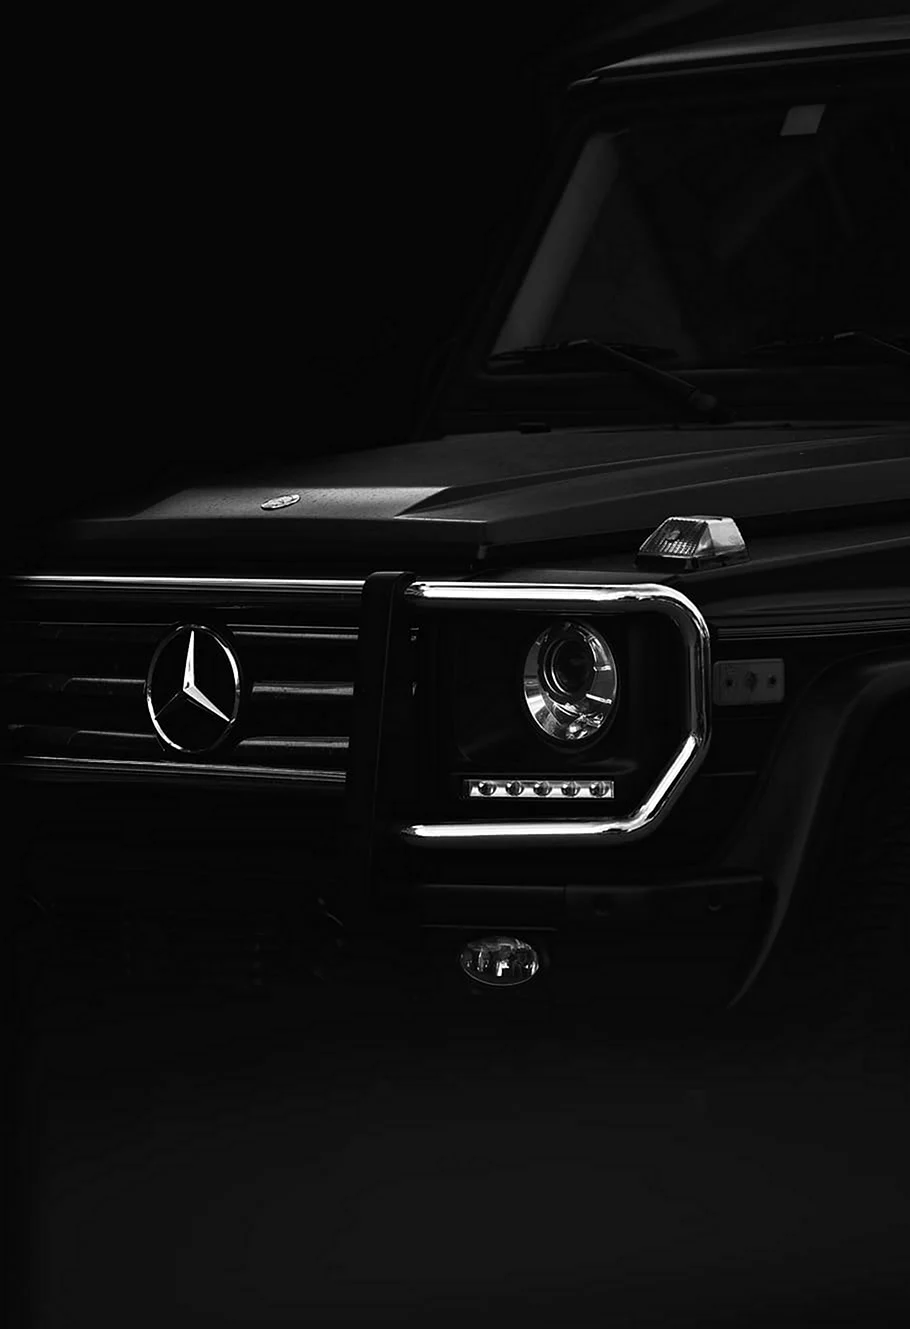 Mercedes Benz Gelandewagen 2020 айфон